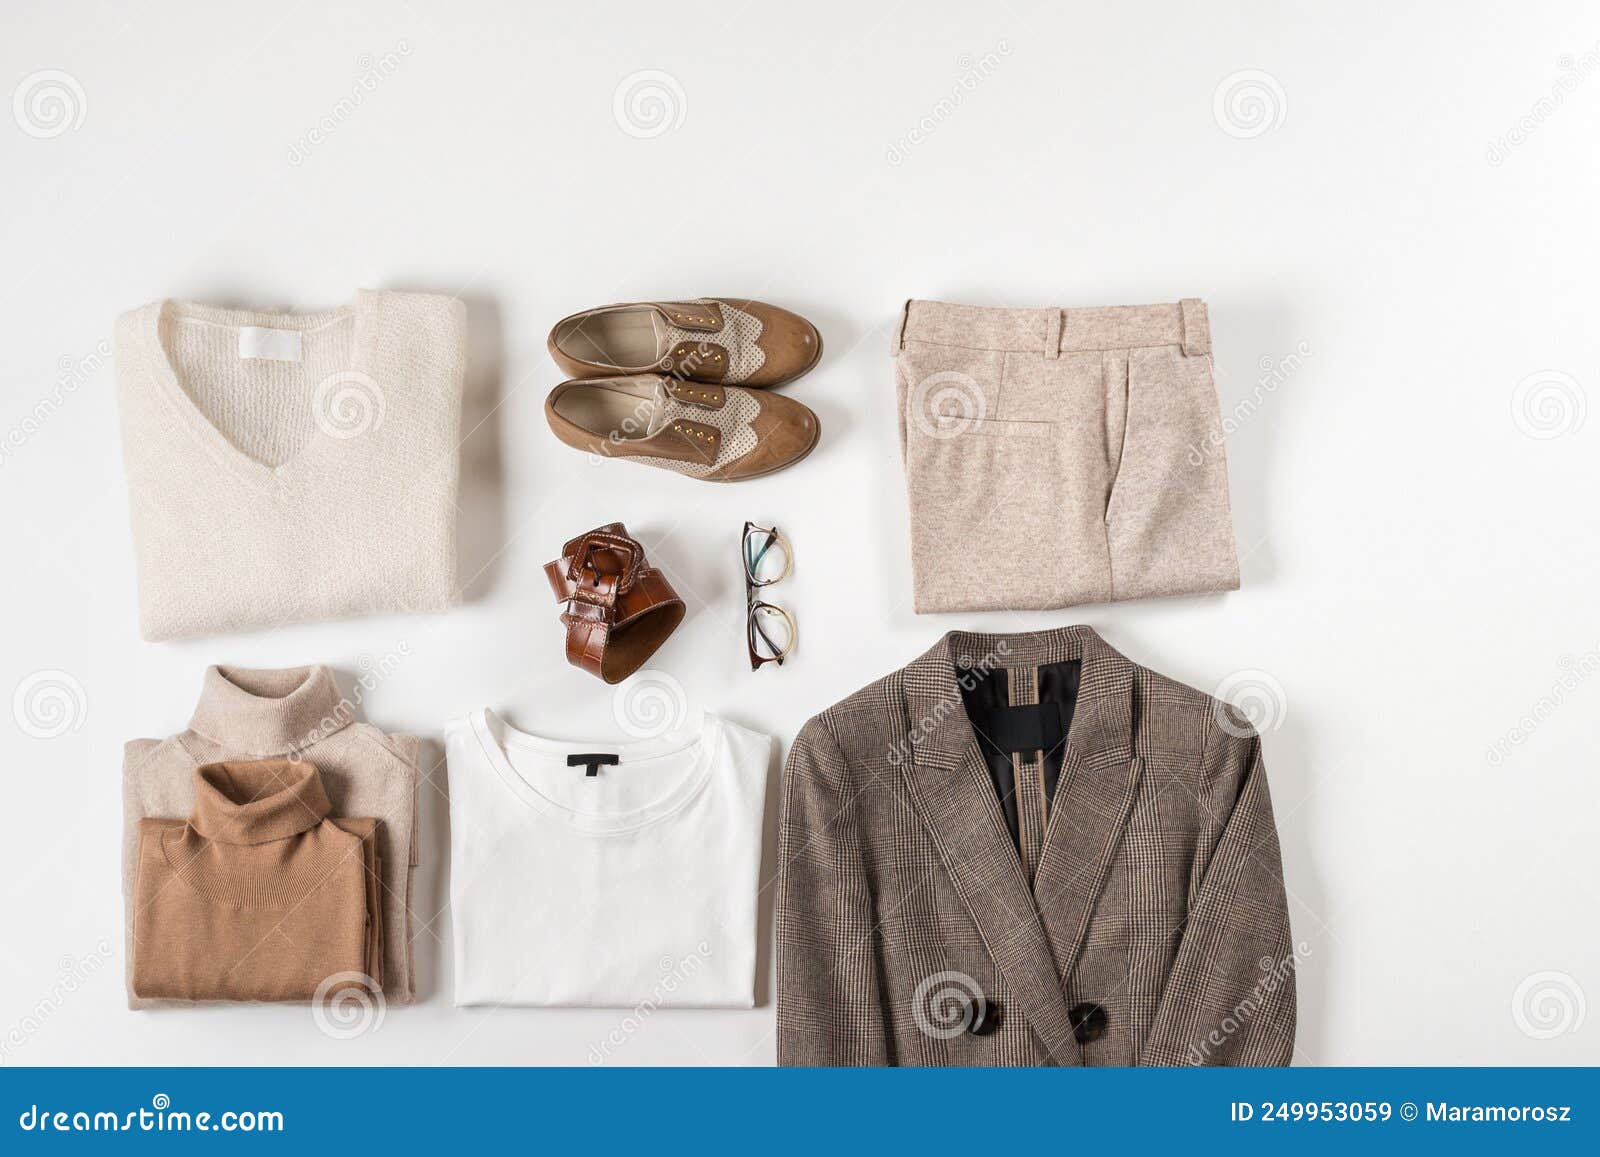 Basic Minimalist Wardrobe. Flat Lay Stock Image - Image of minimal ...